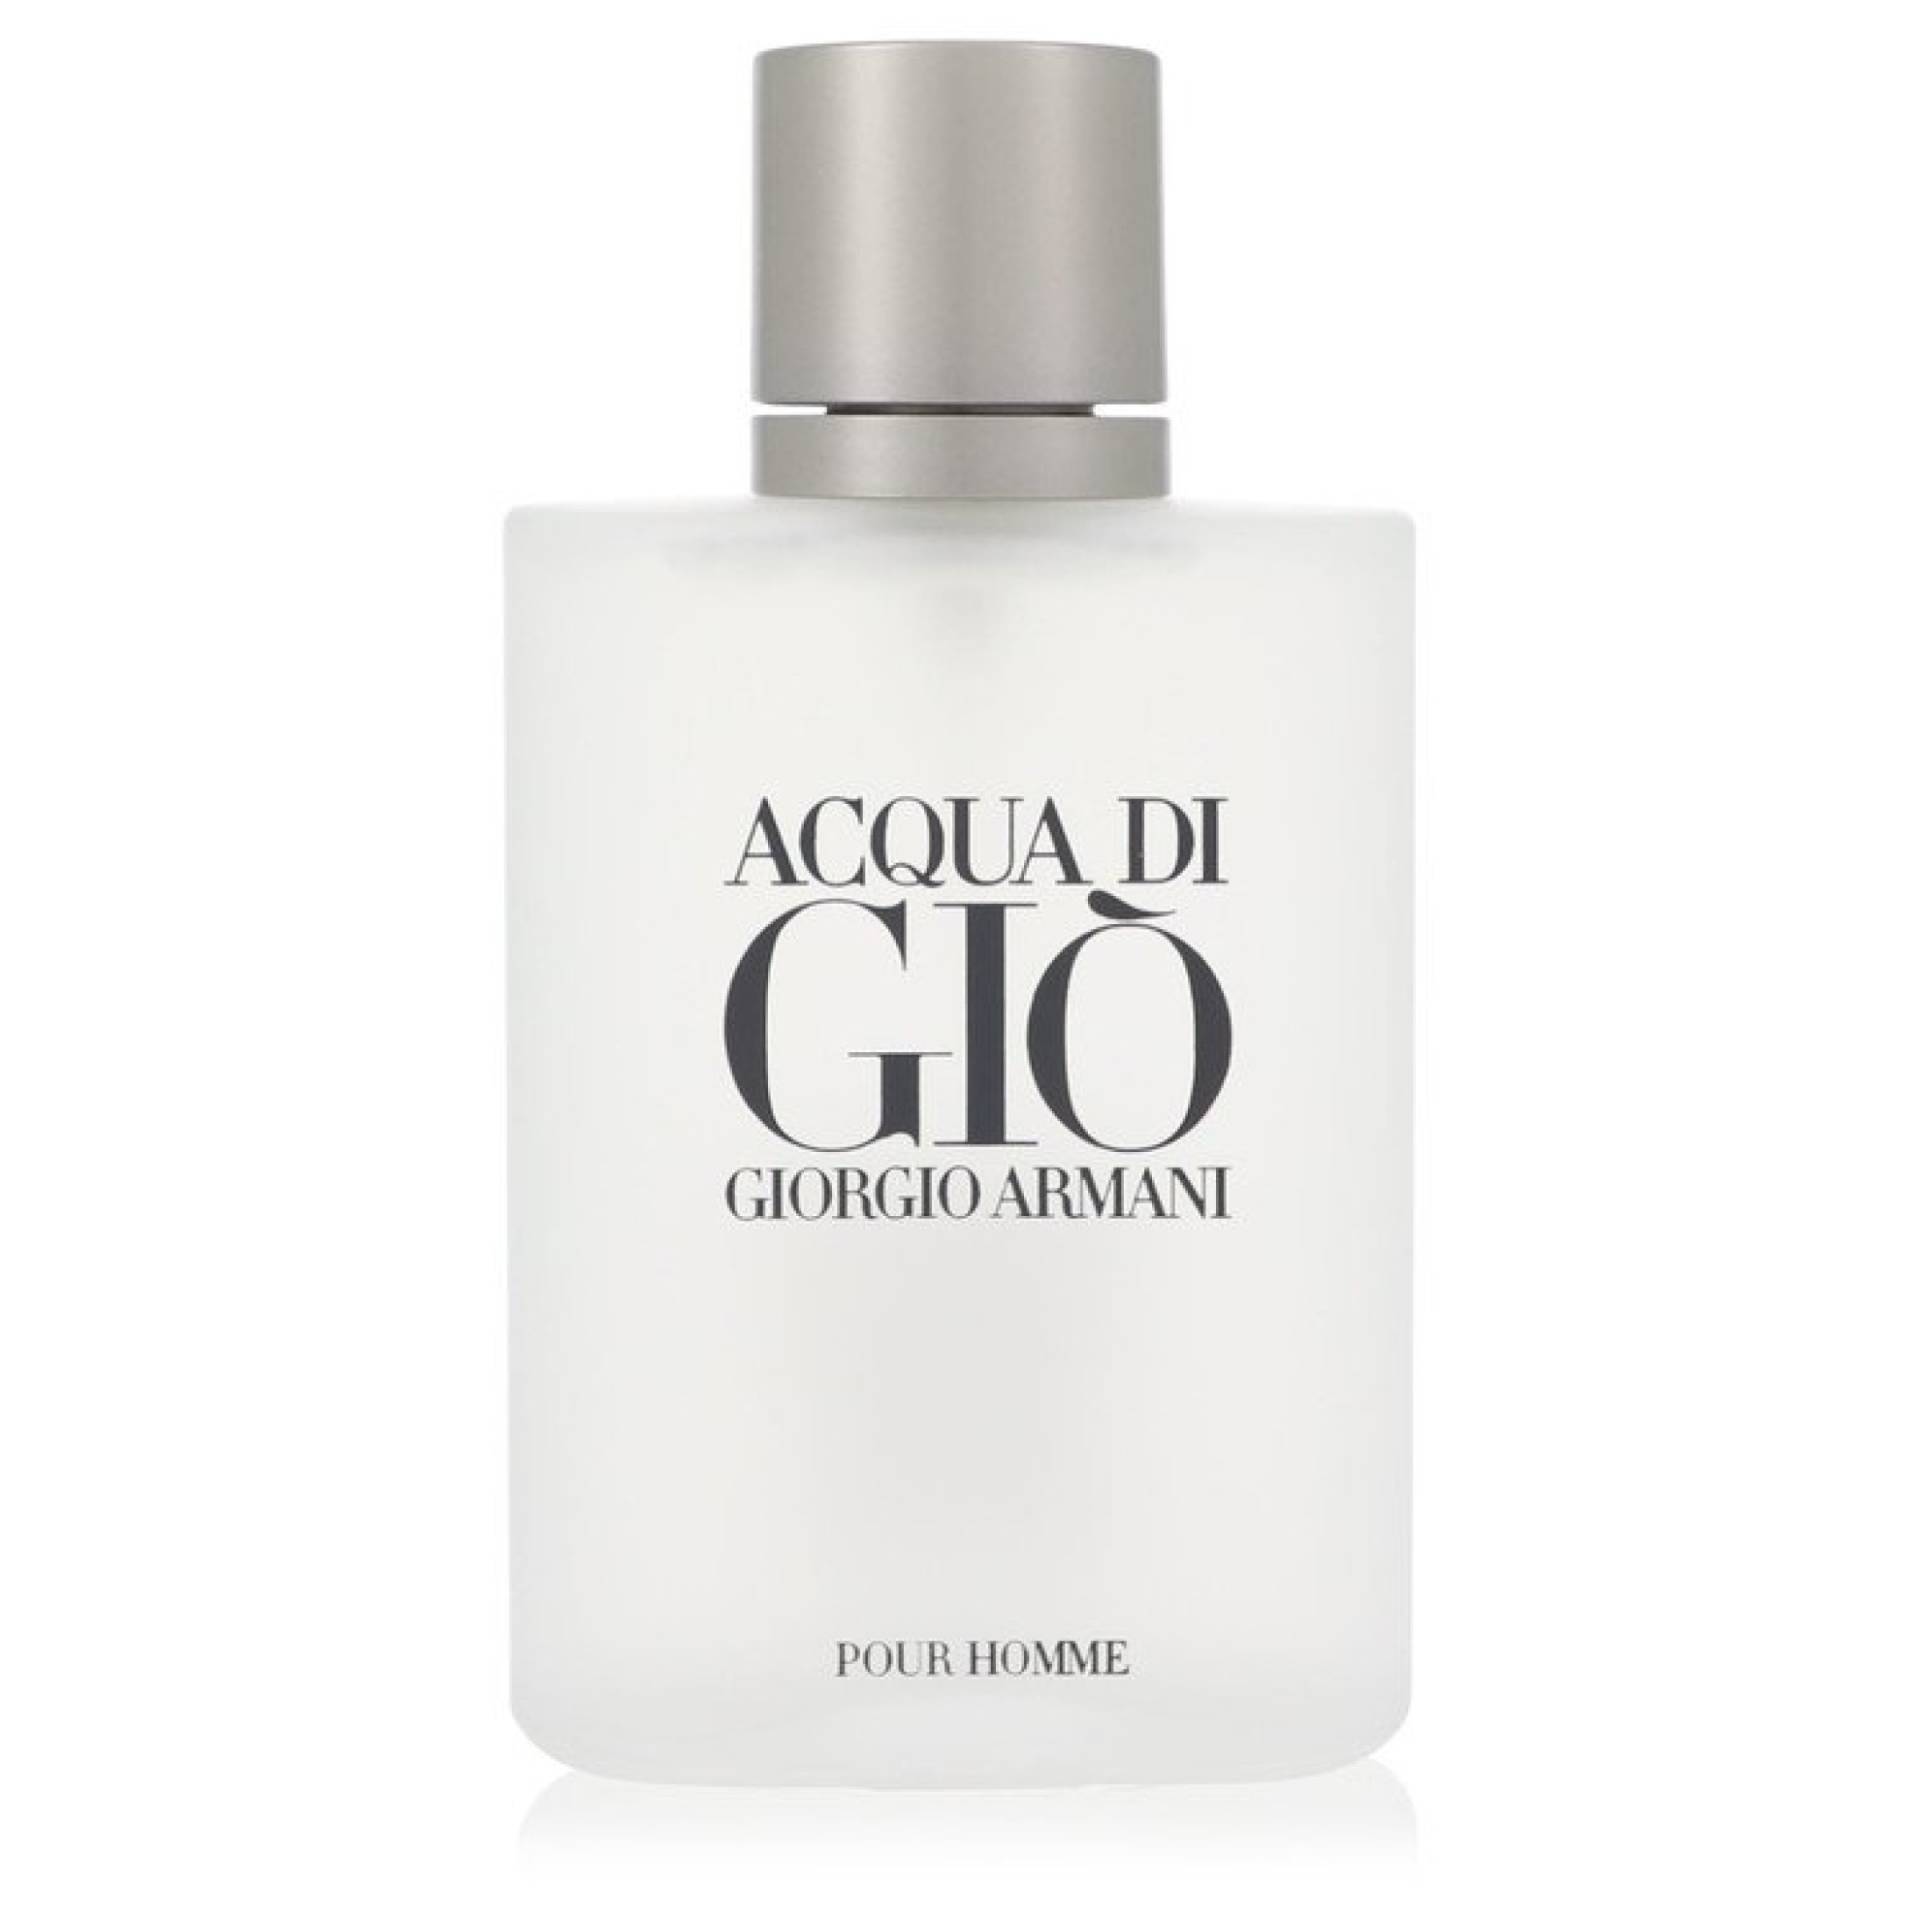 Giorgio Armani ACQUA DI GIO Eau De Toilette Spray (Tester) 100 ml von Giorgio Armani